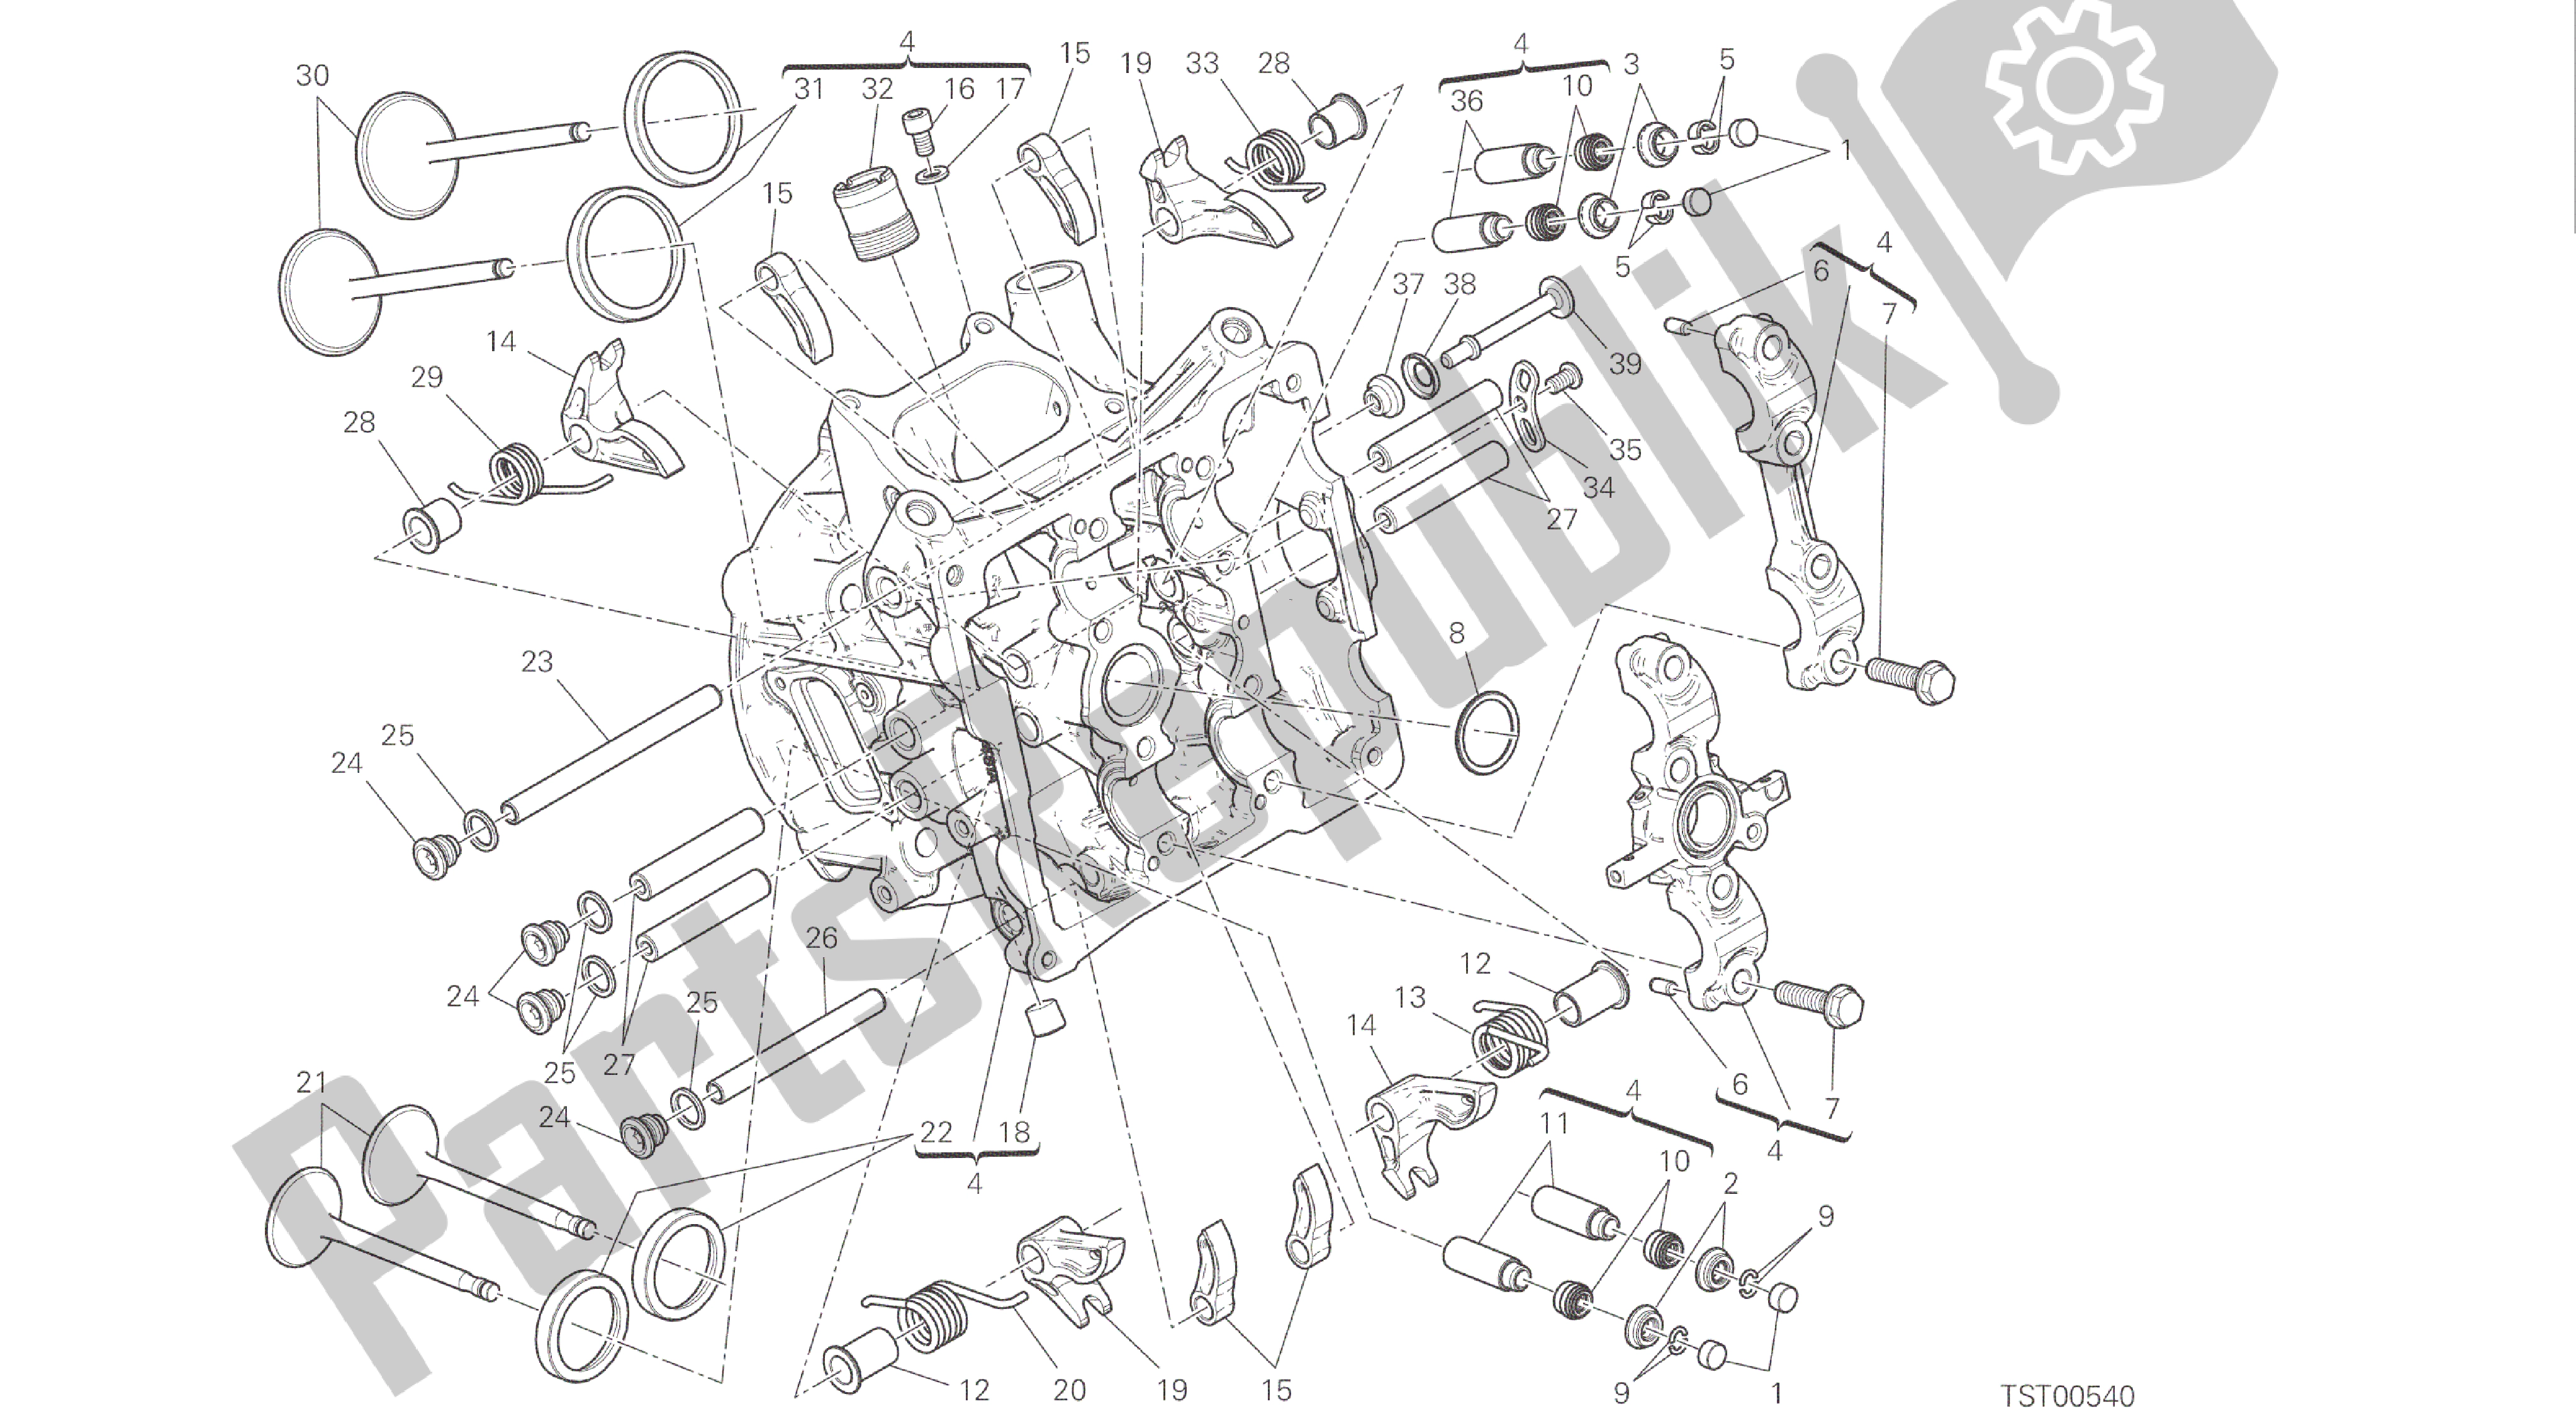 Todas las partes para Dibujo 014 - Cabezal Horizontal [mod: 1299s; Motor De Grupo Xst: Aus, Eur, Fra, Jap, Twn] de Ducati Panigale S ABS 1299 2016